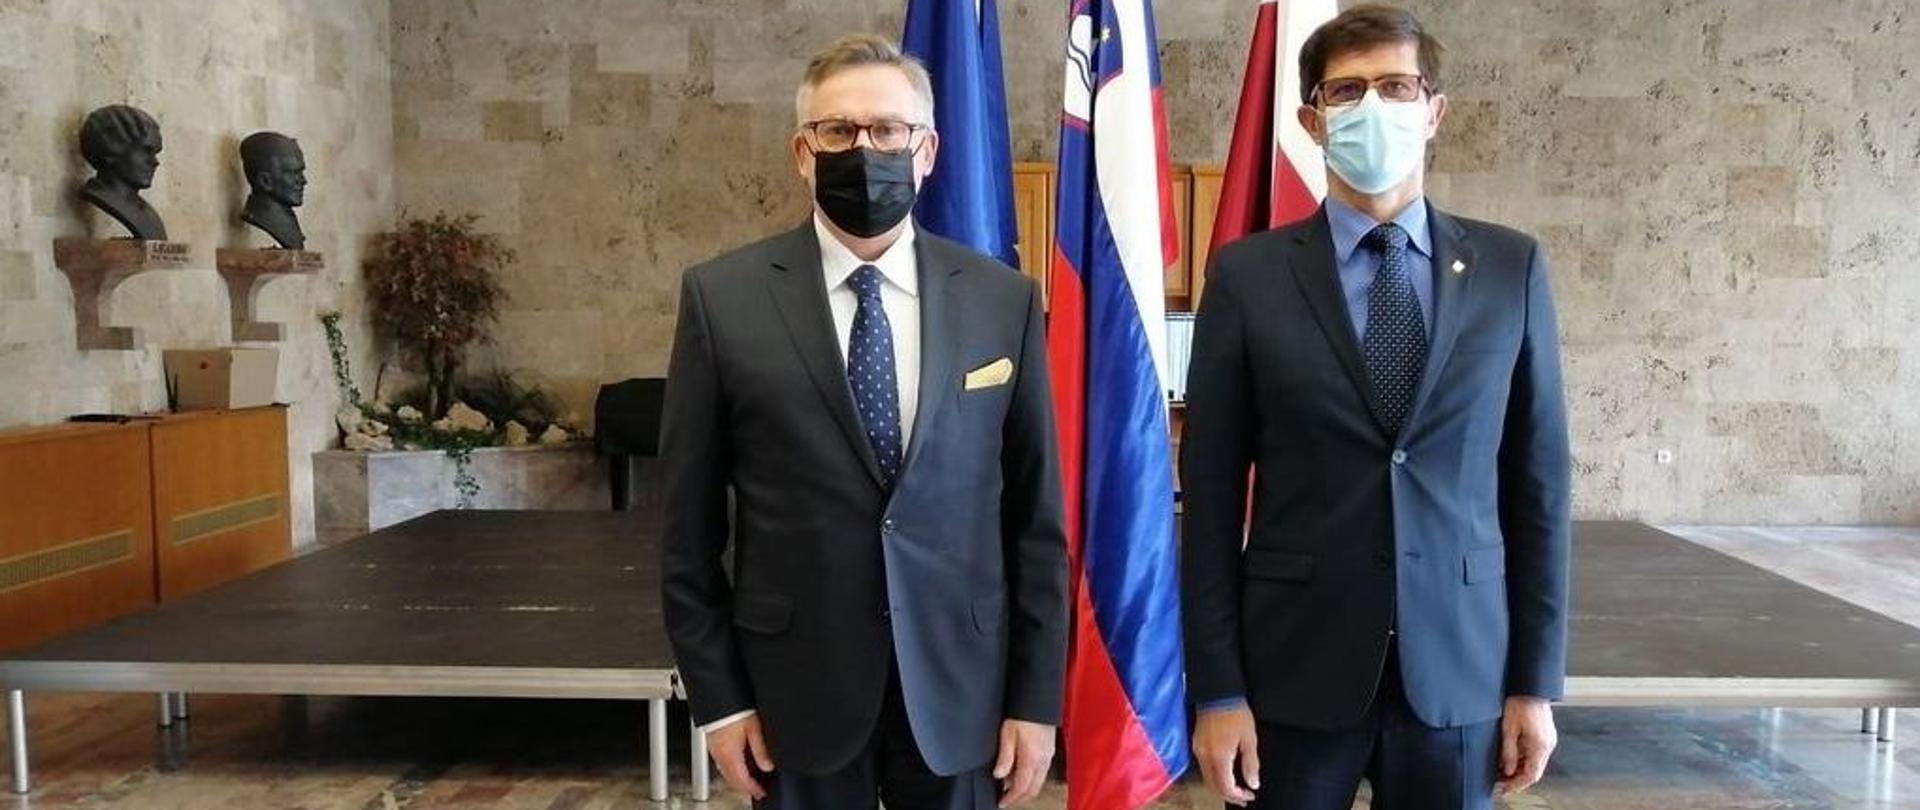 Ambasador RP Krzysztof Olendzki i Burmistrz Kranja Matjaž Rakovec